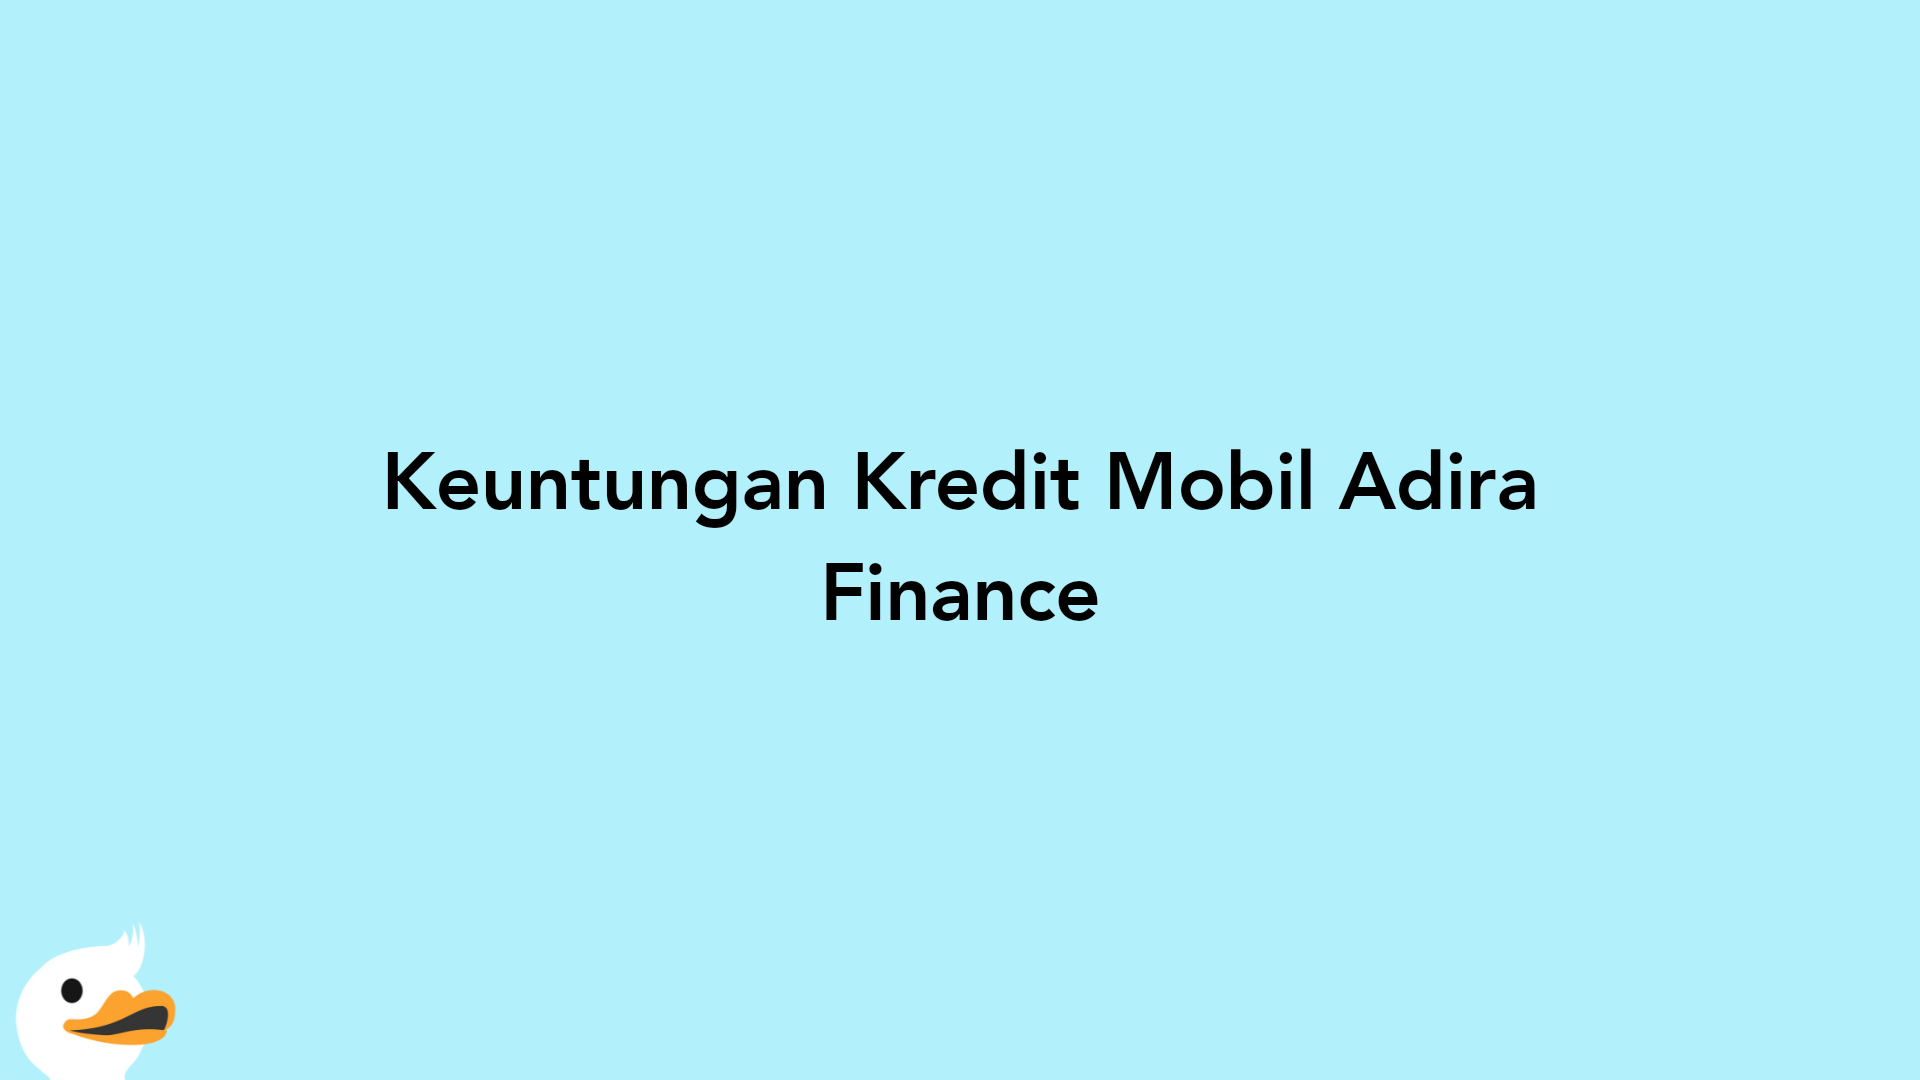 Keuntungan Kredit Mobil Adira Finance